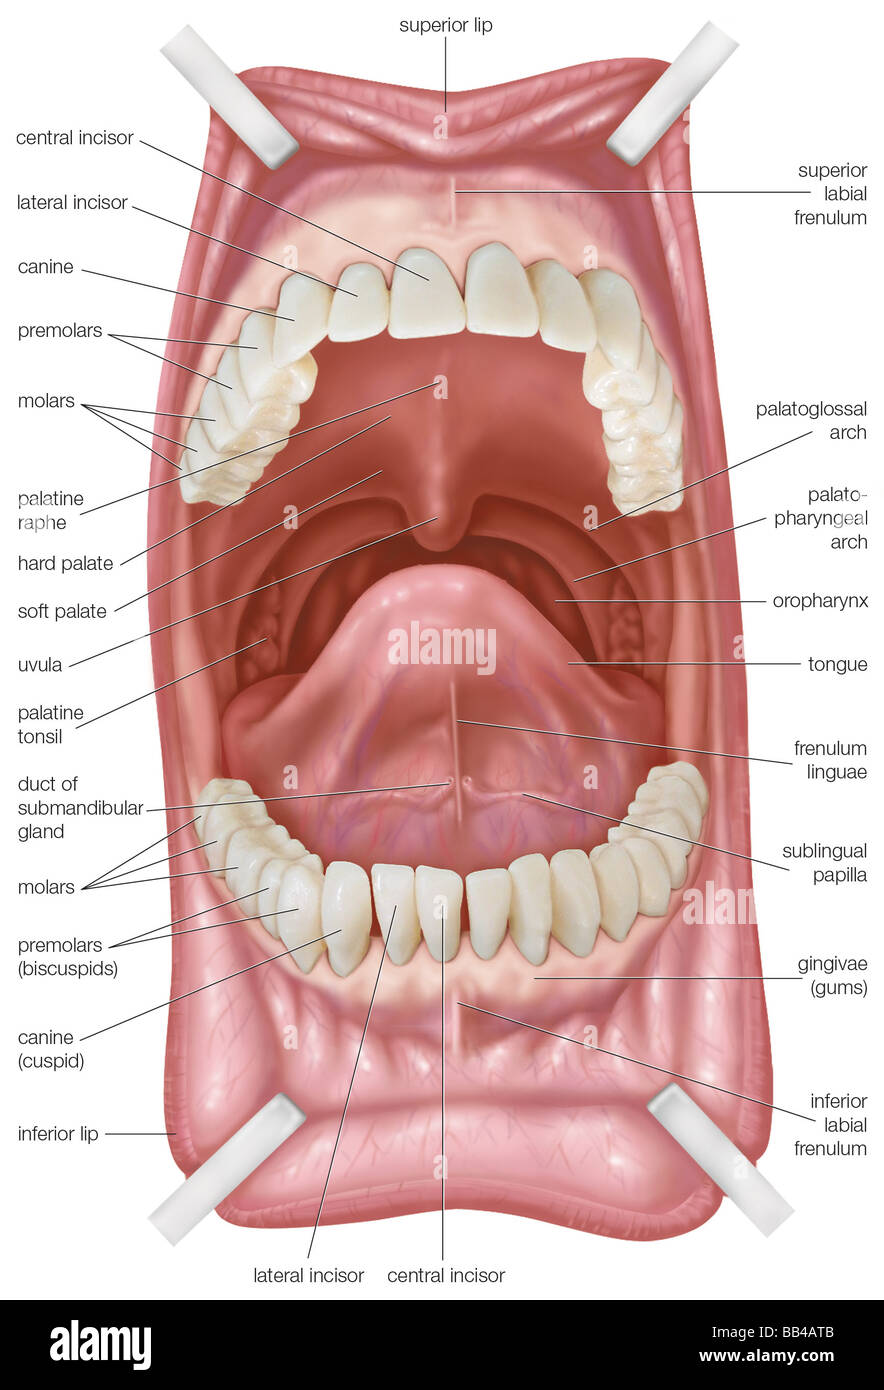 Mund, Zähne und Gaumen einschließlich Stockfotografie - Alamy